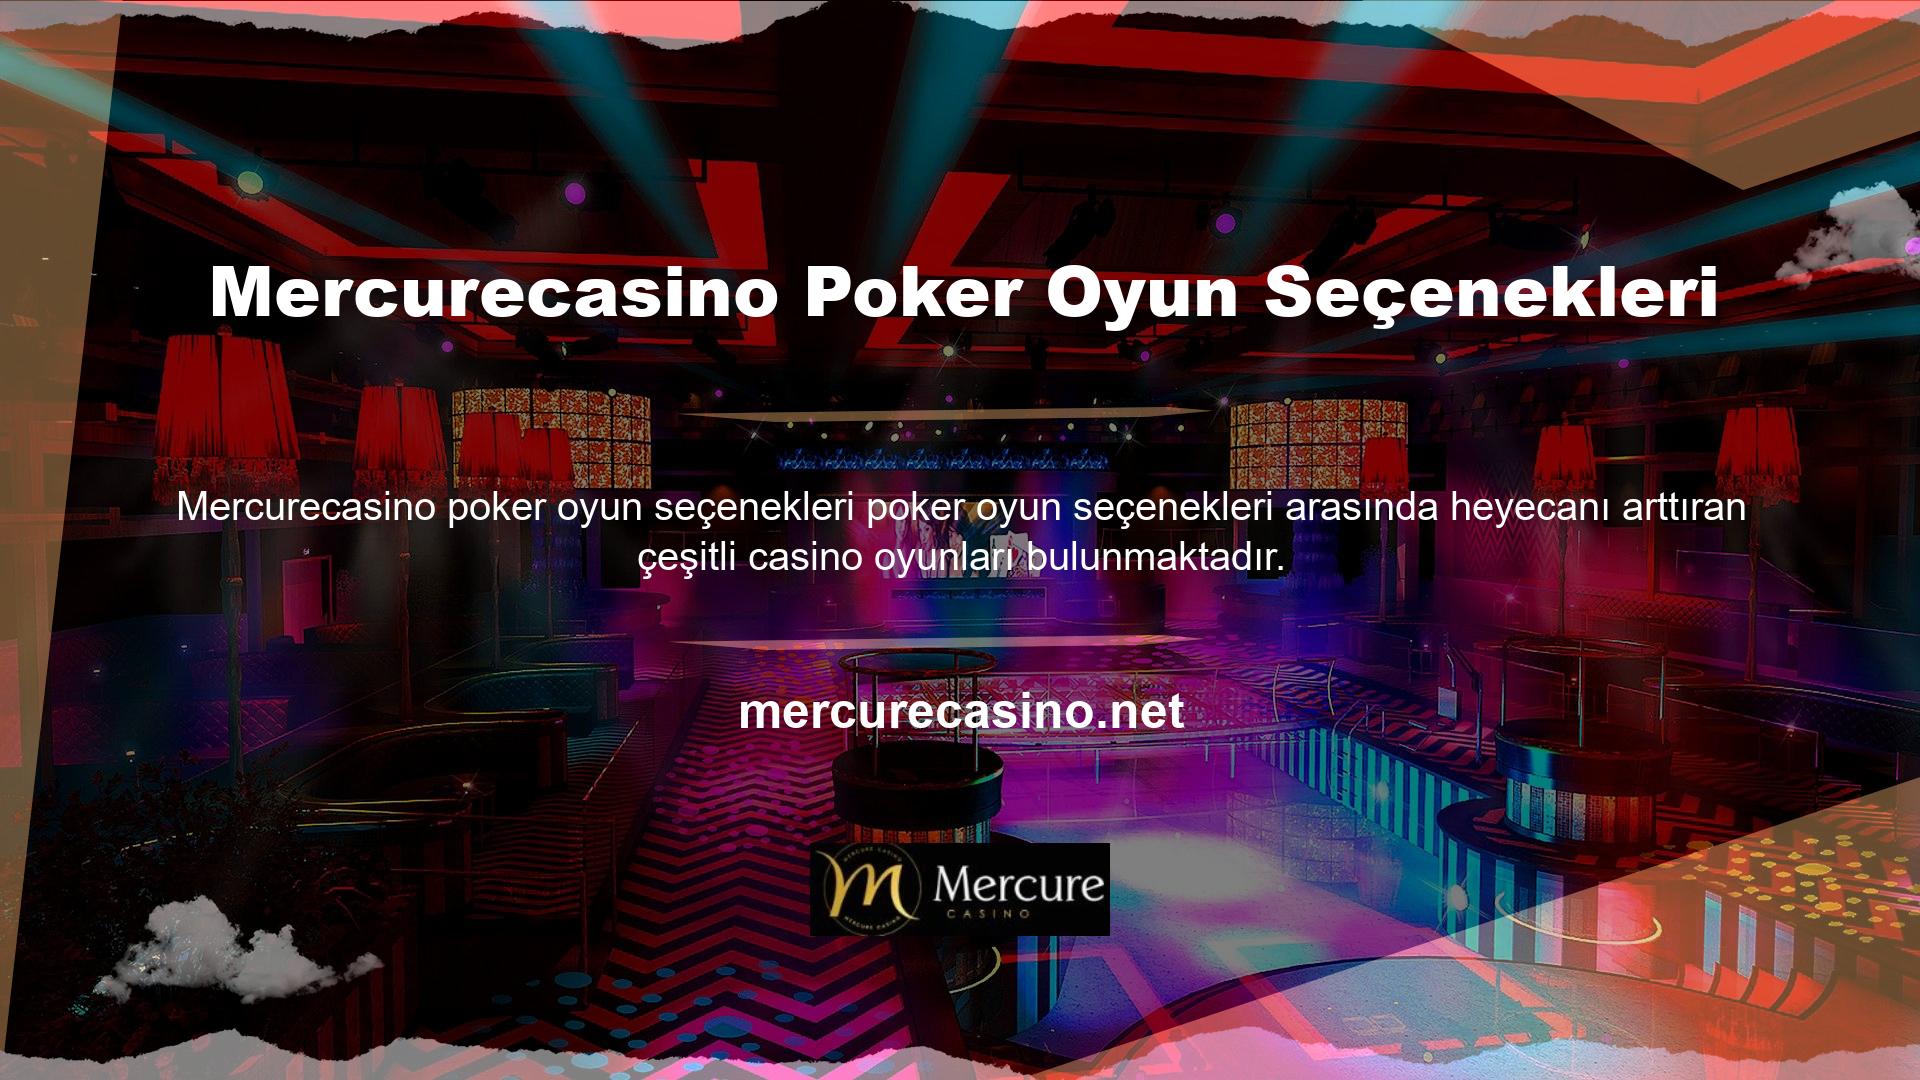 Sitenin slot menüsünde çok çeşitli casino oyunları bulunmaktadır